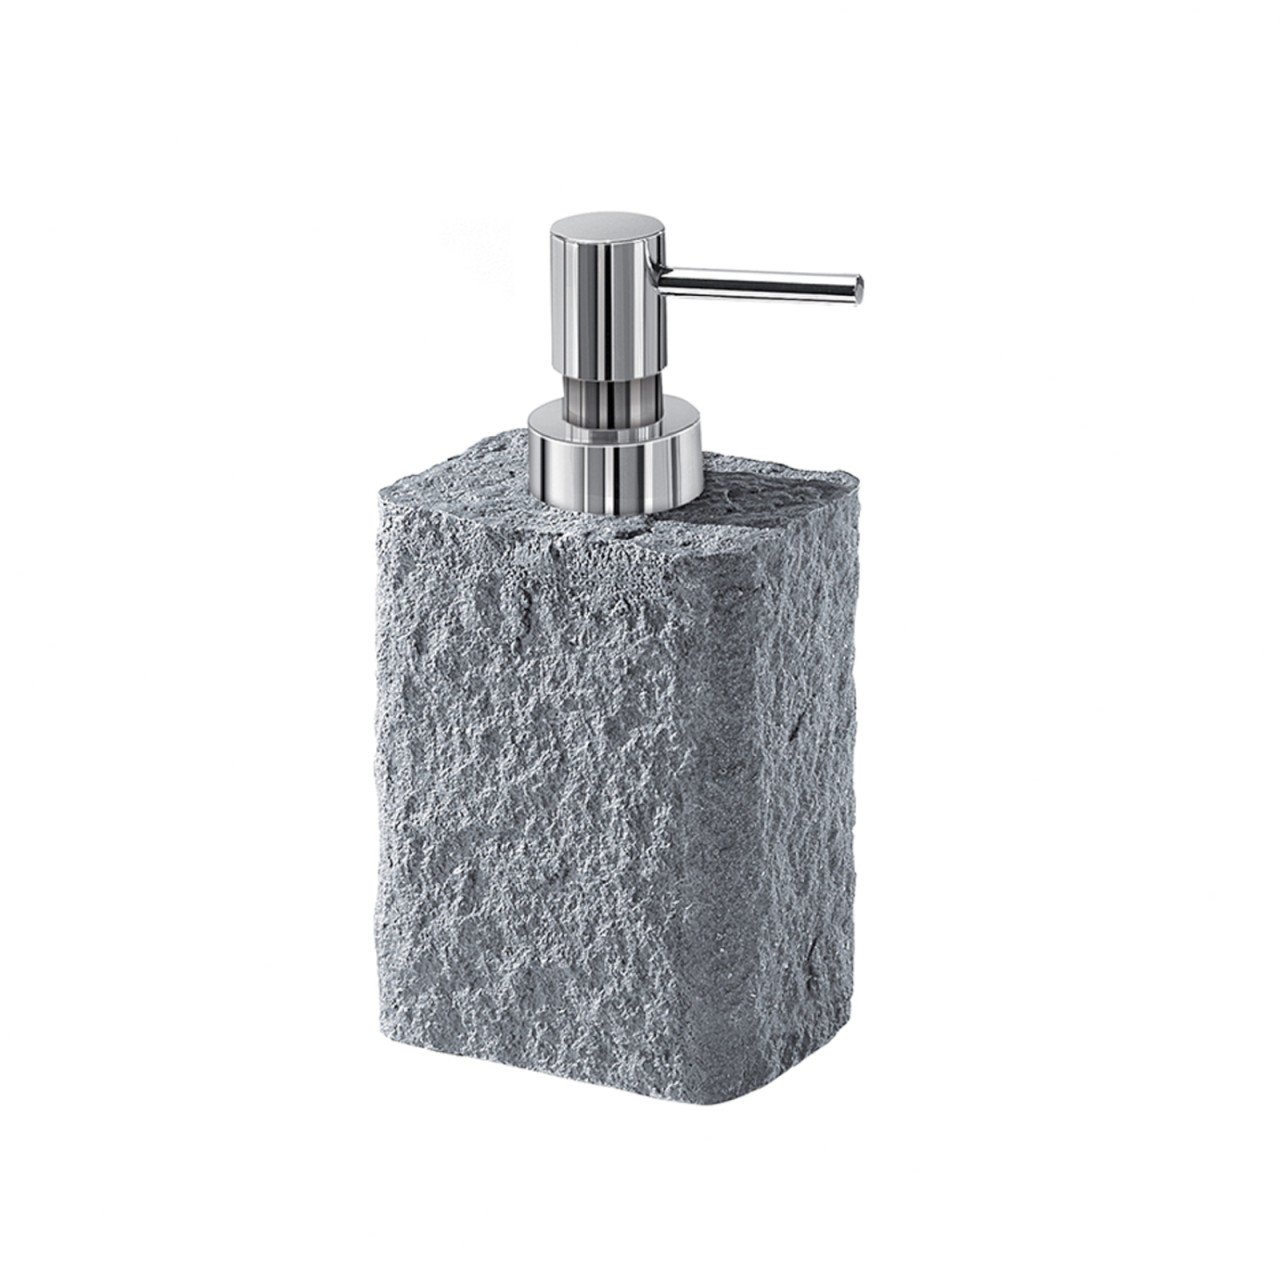 Dispenser sapone grigio effetto pietra in resina e sabbia